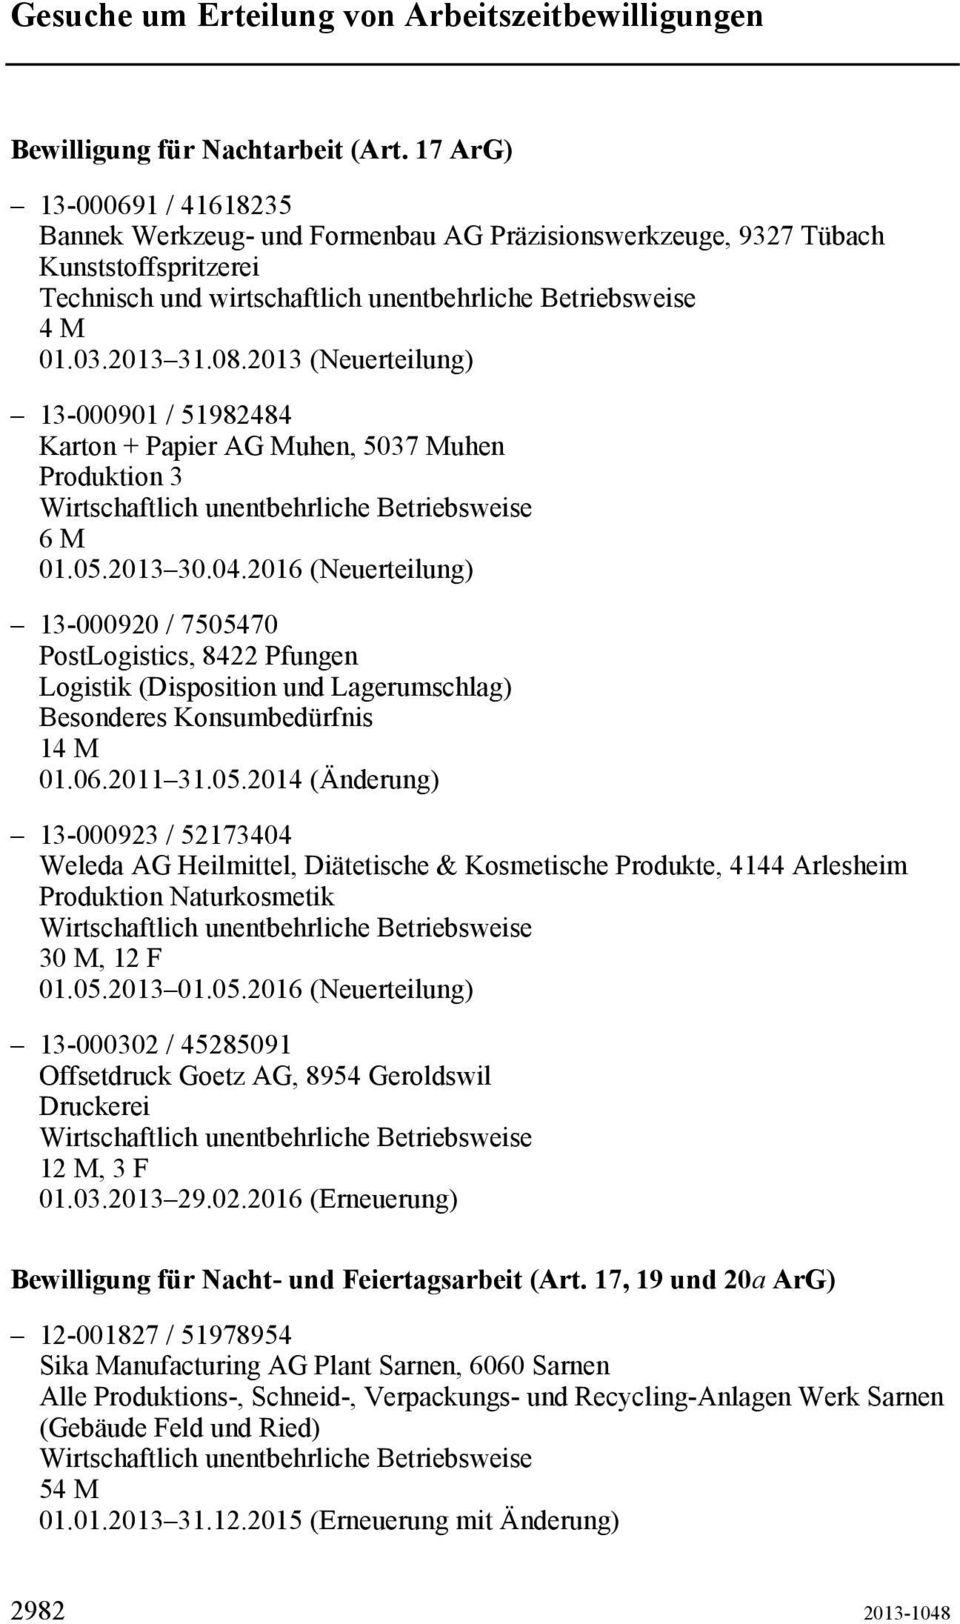 2013 (Neuerteilung) 13-000901 / 51982484 Karton + Papier AG Muhen, 5037 Muhen Produktion 3 6 M 13-000920 / 7505470 PostLogistics, 8422 Pfungen Logistik (Disposition und Lagerumschlag) 14 M 01.06.